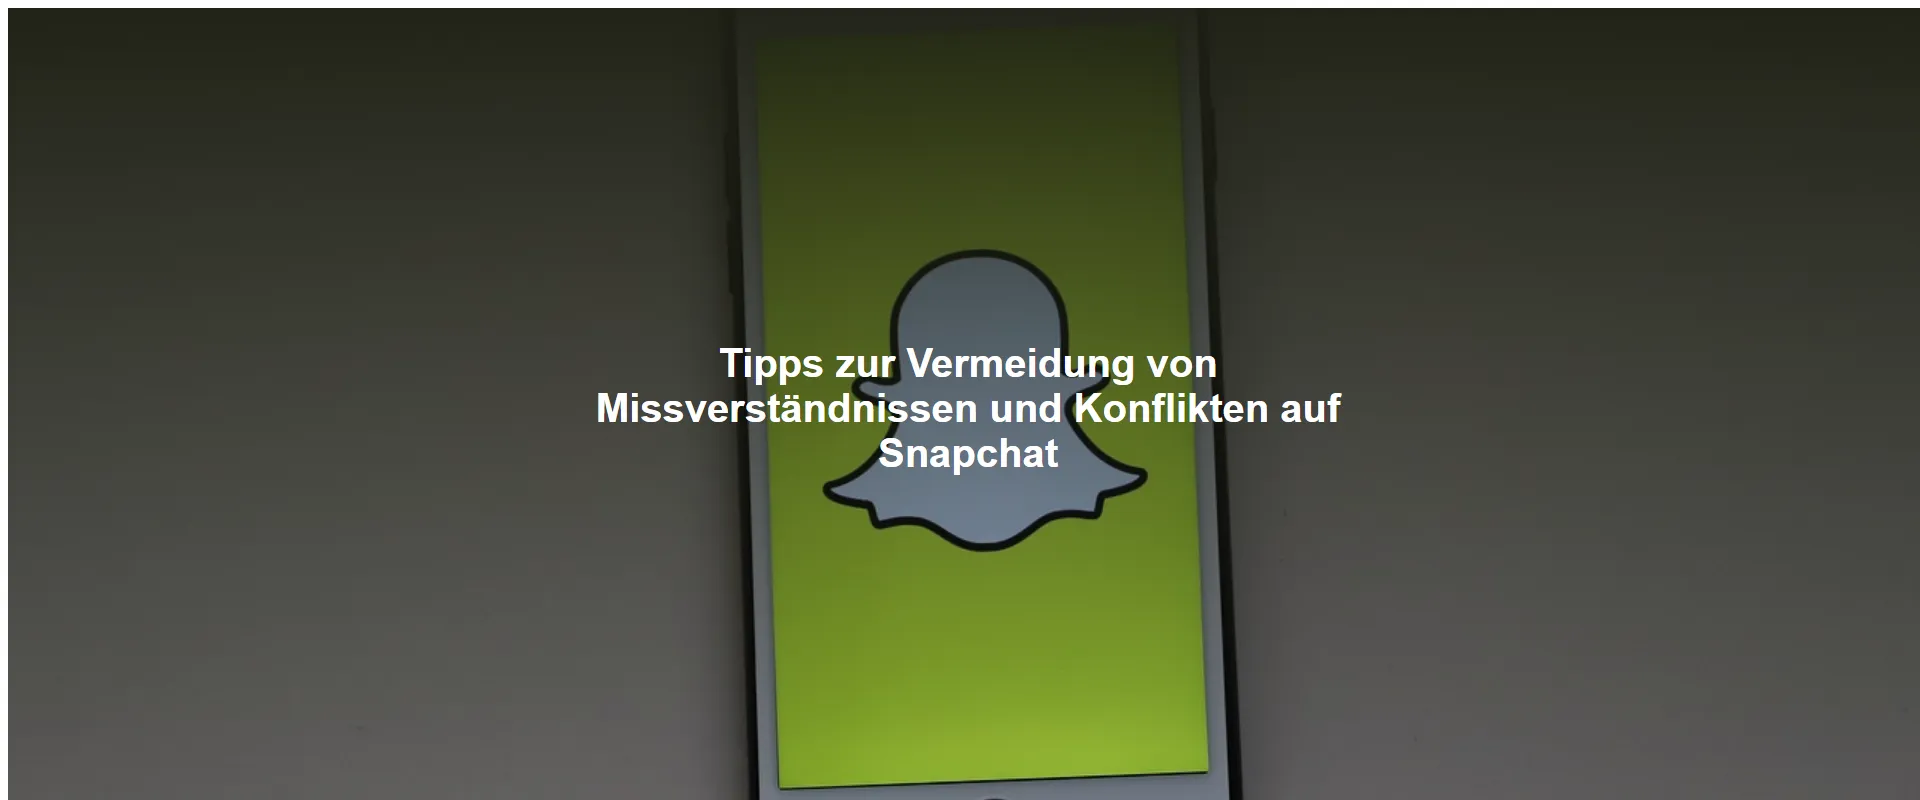 Tipps zur Vermeidung von Missverständnissen und Konflikten auf Snapchat